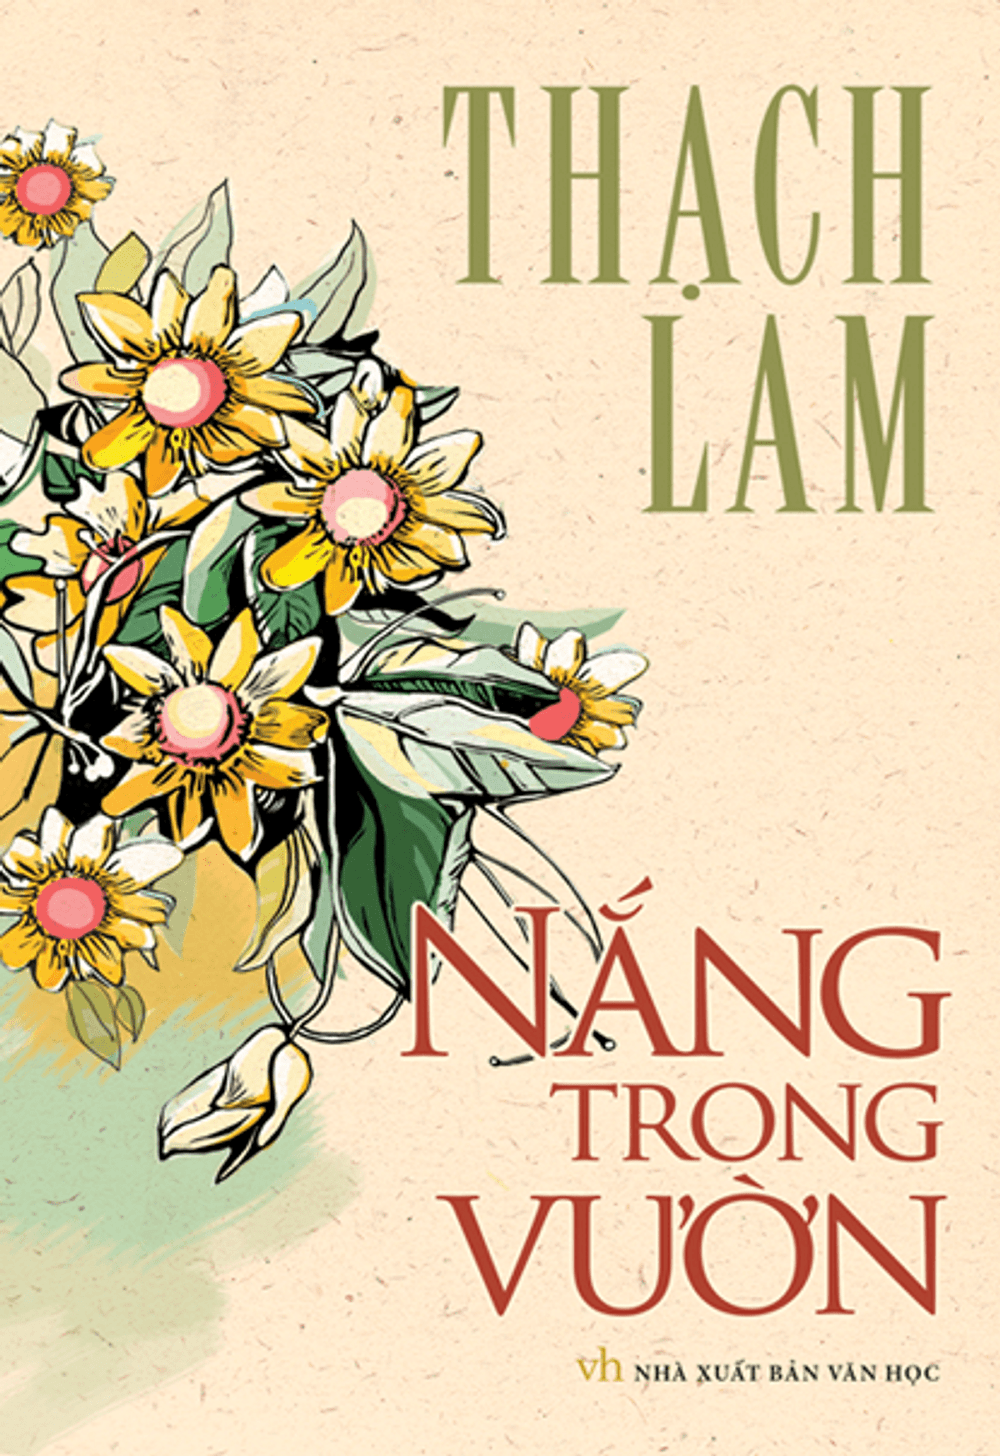 Hình ảnh bìa quyển sách Nắng trong vườn của Thạch Lam